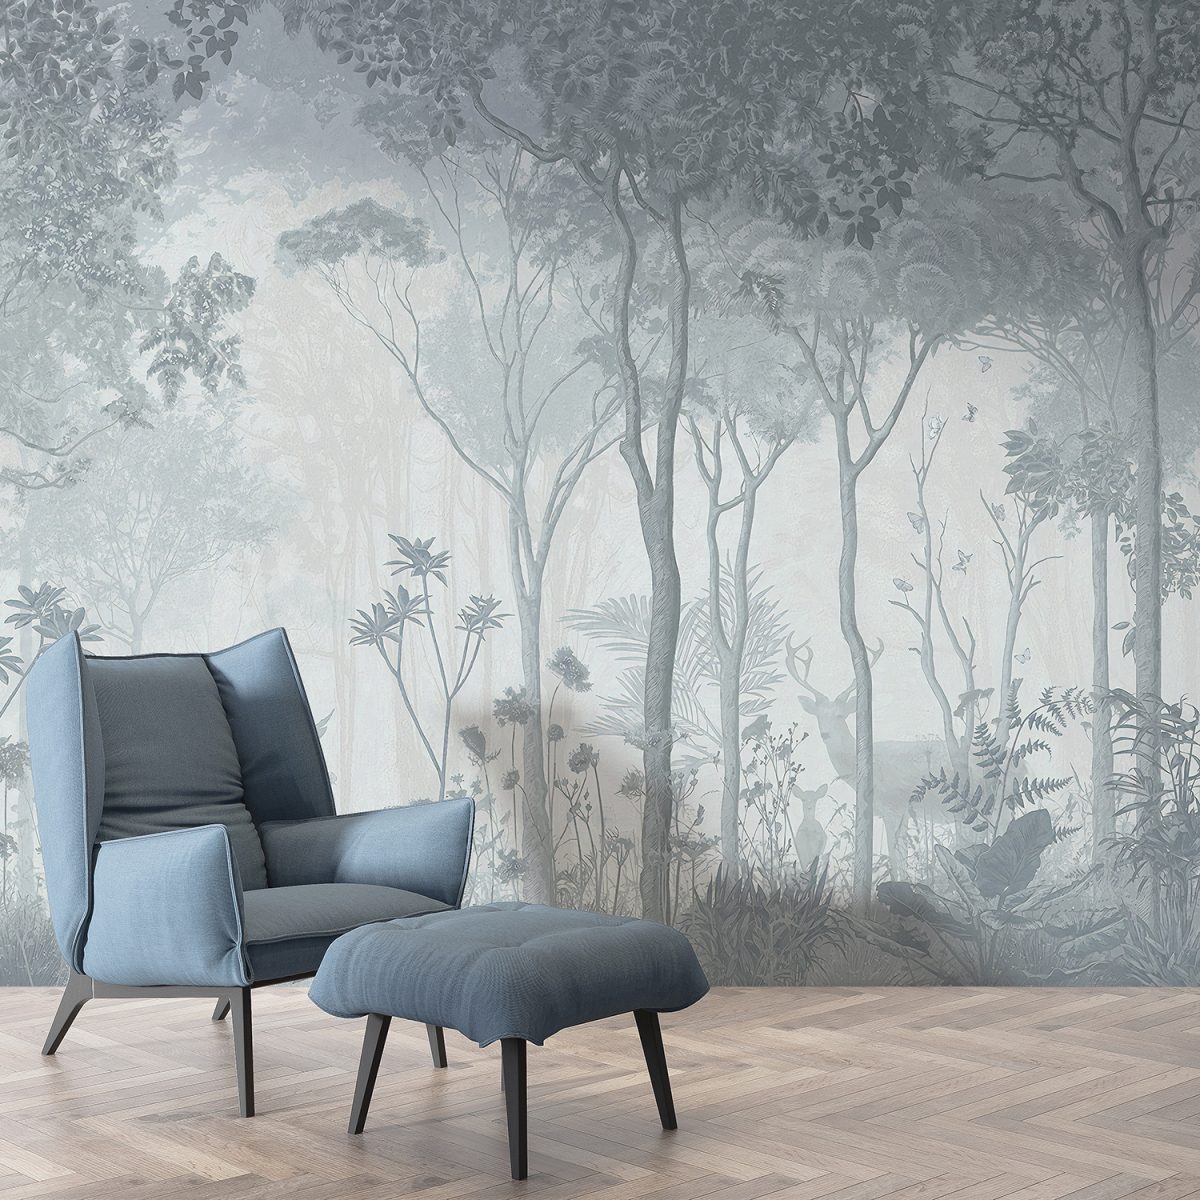 Forest Scene Filled Fog Wallpaper Murals